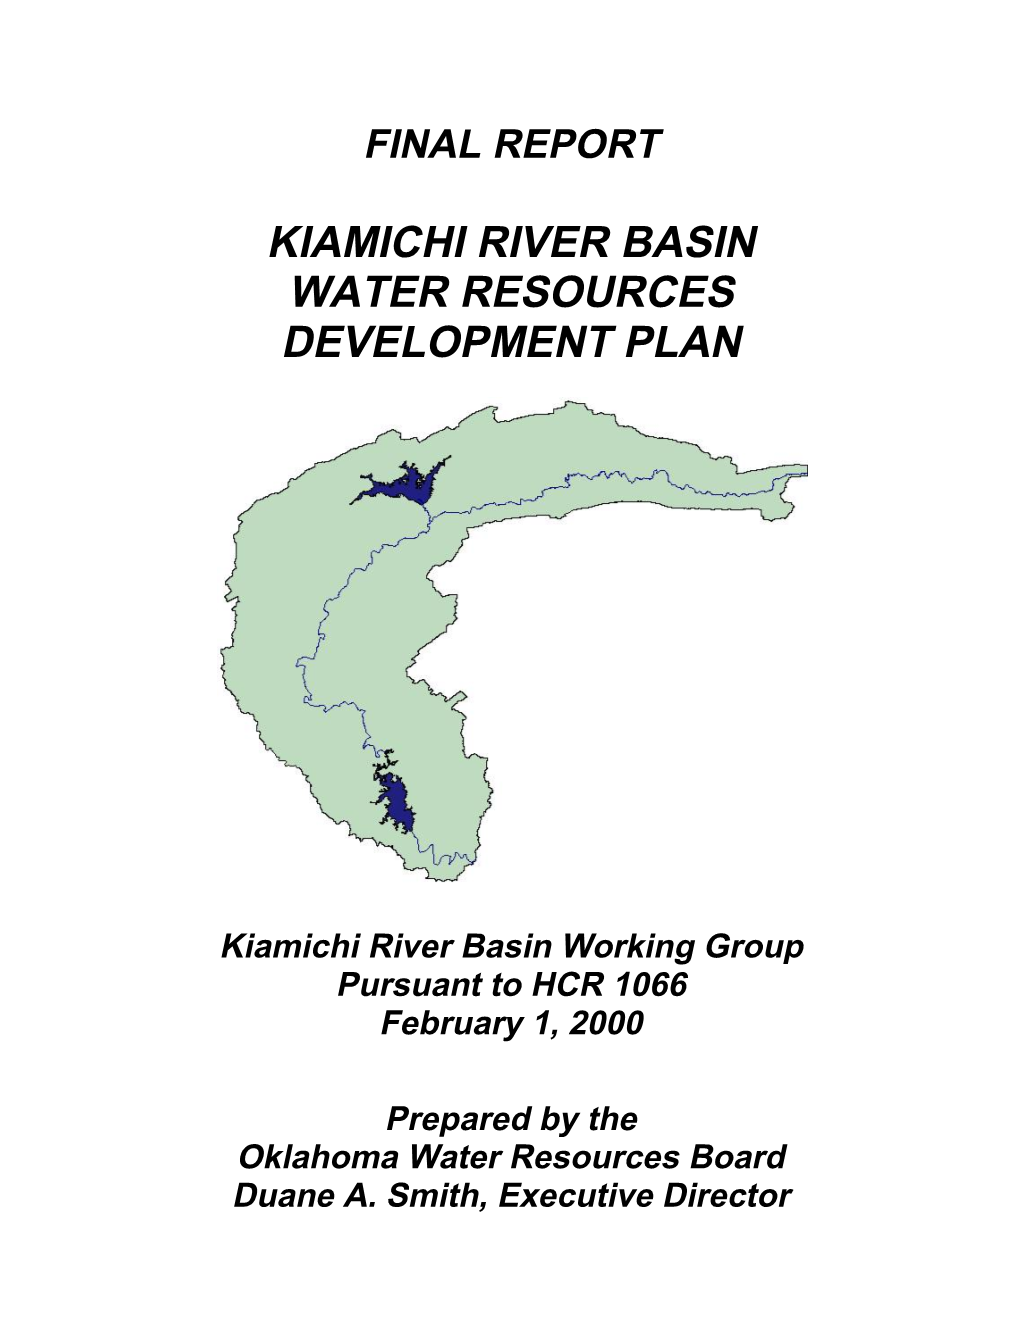 Kiamichi Development Plan 1